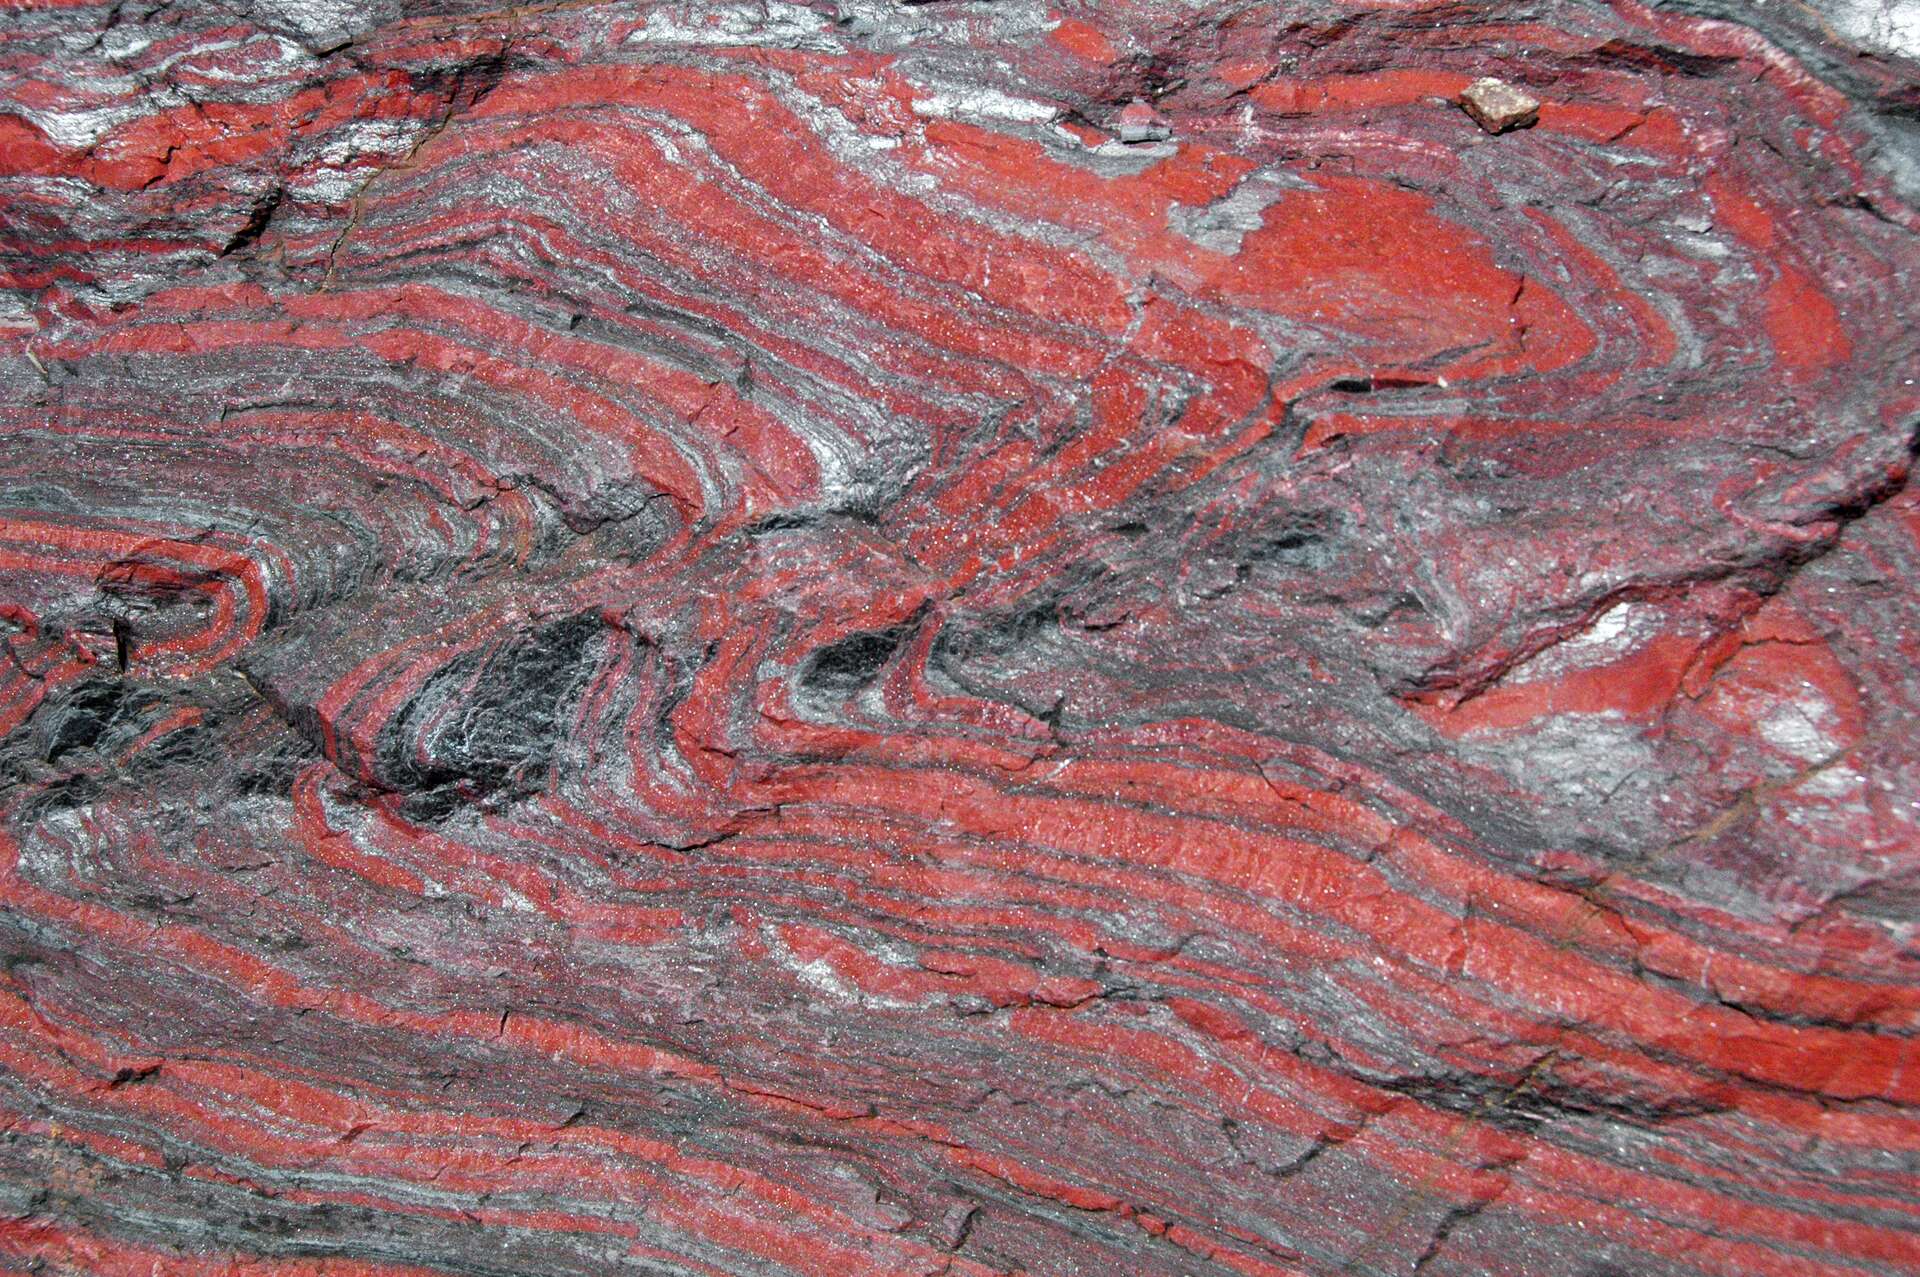 Ces roches ferreuses pourraient être à l’origine des plus grands épisodes volcaniques sur Terre